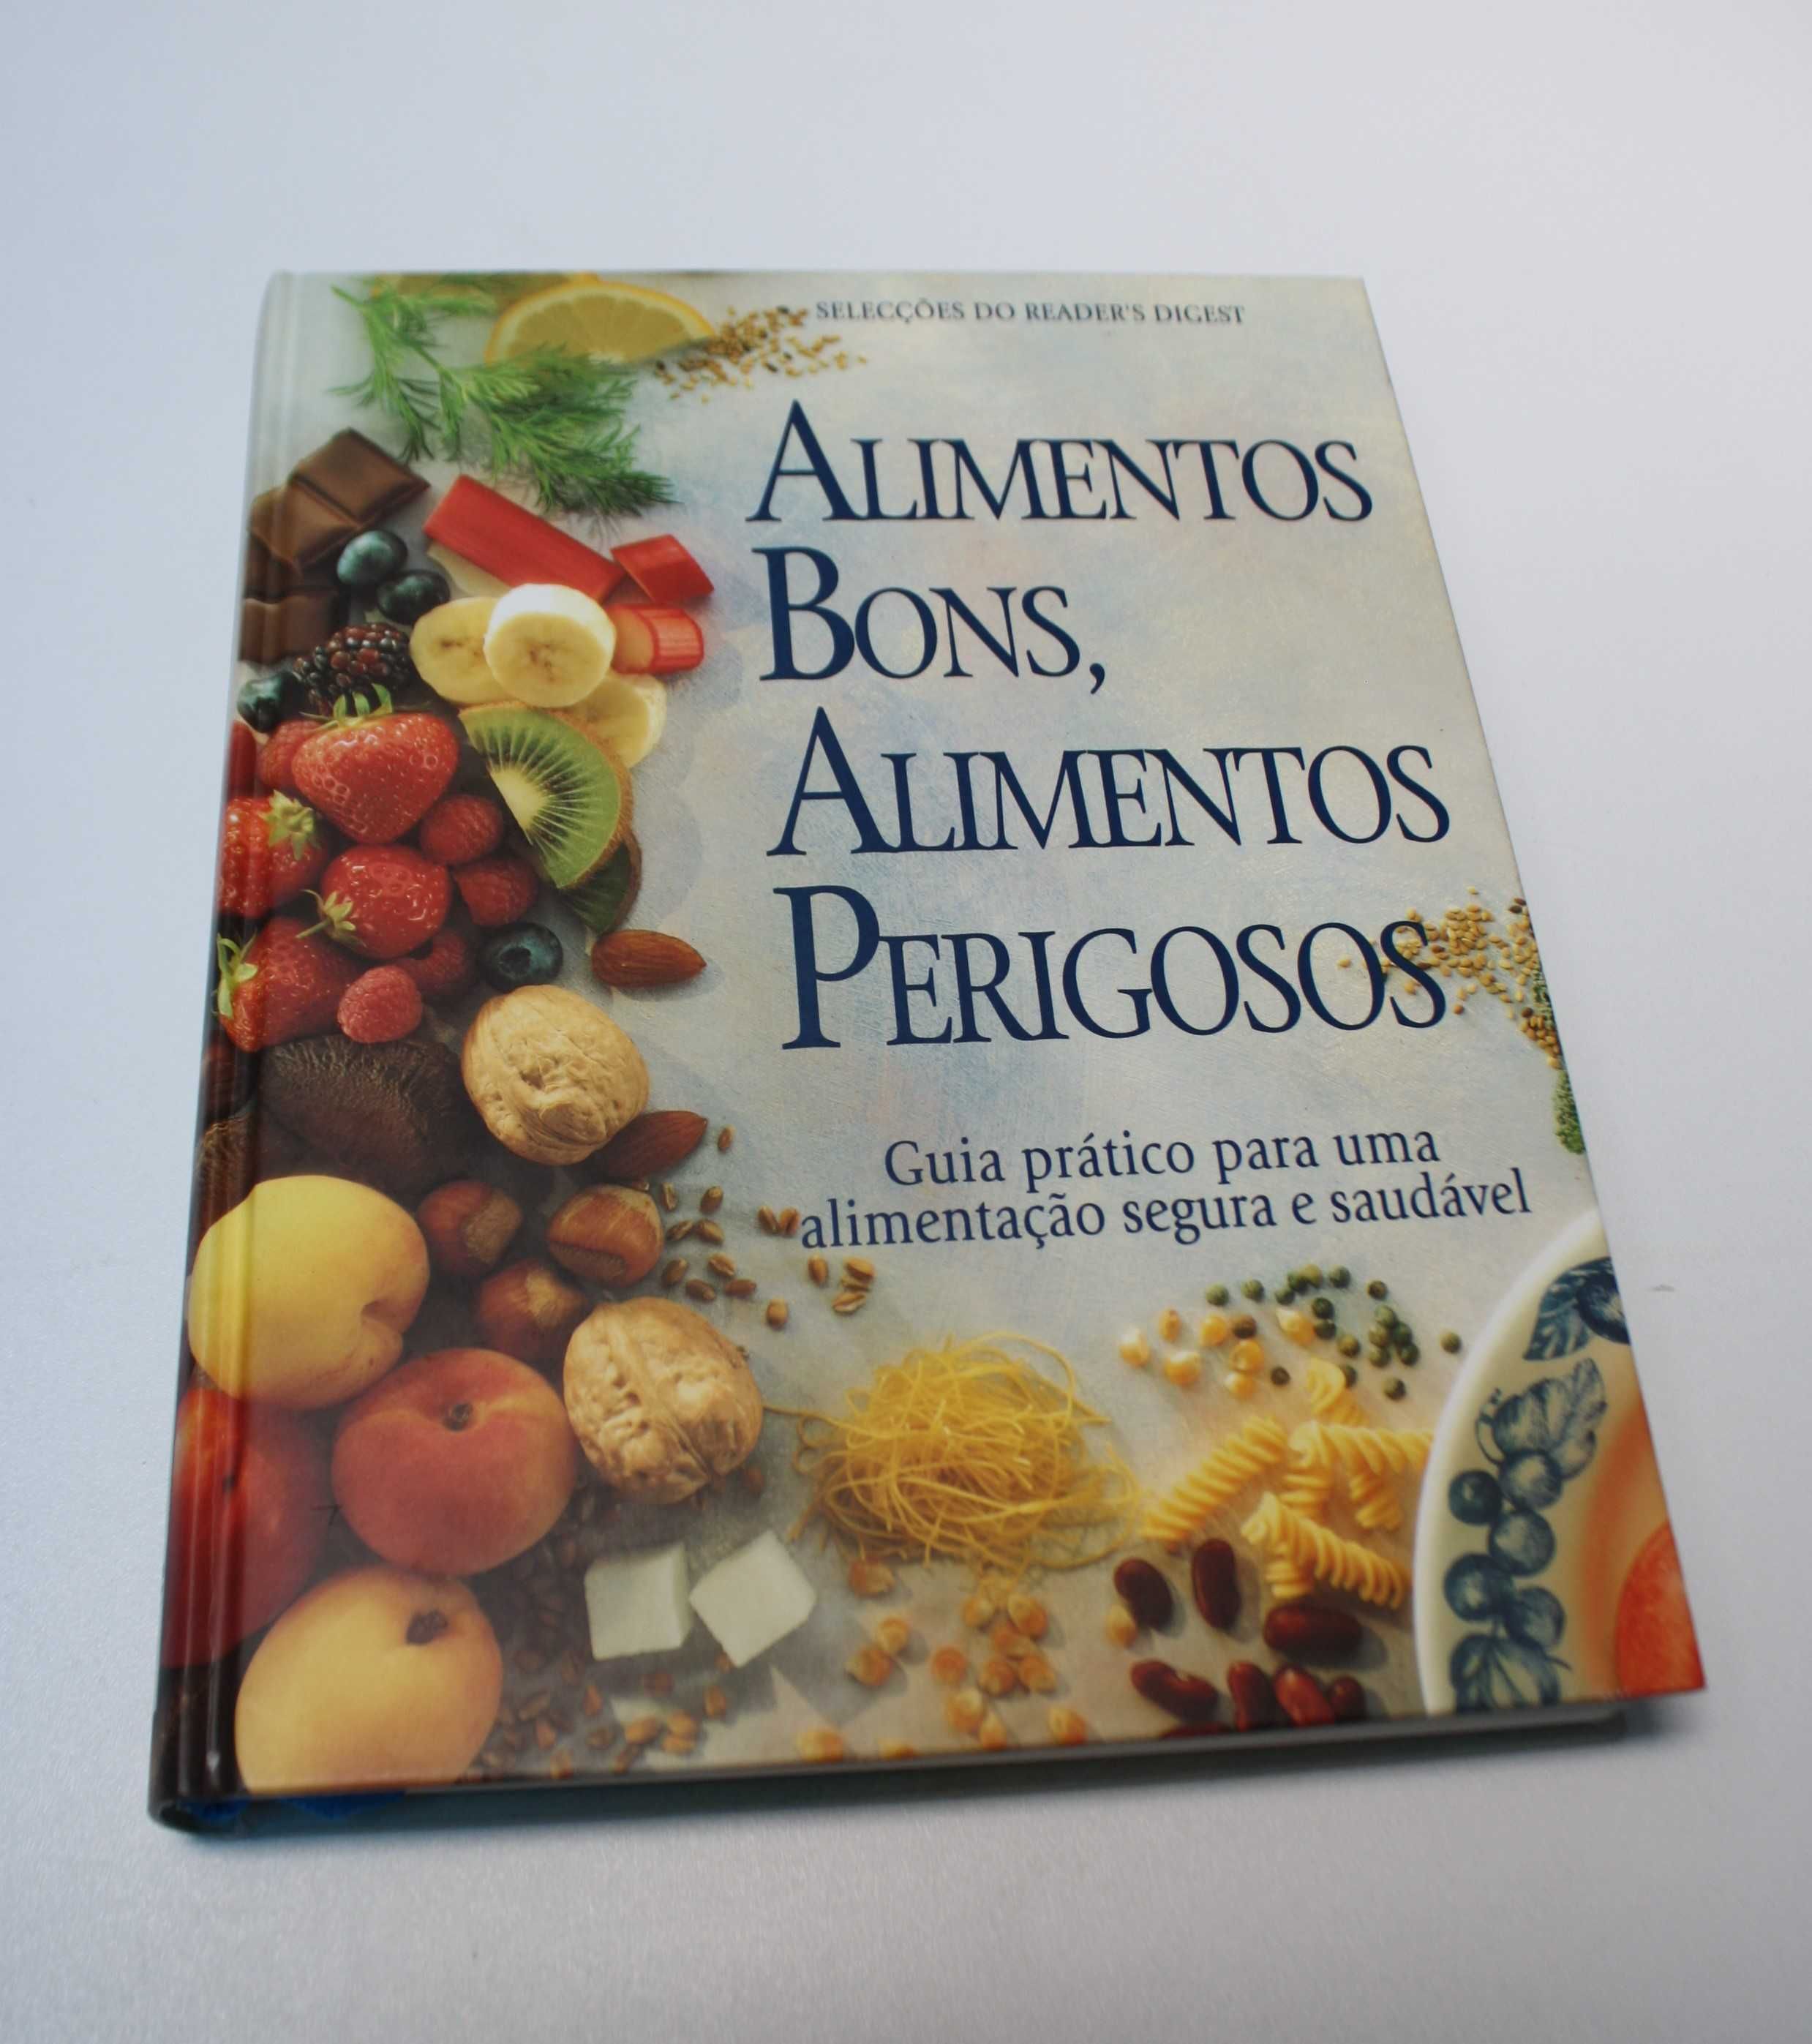 Livro "Alimentos bons, alimentos perigosos" - Seleção Reader`s Digest